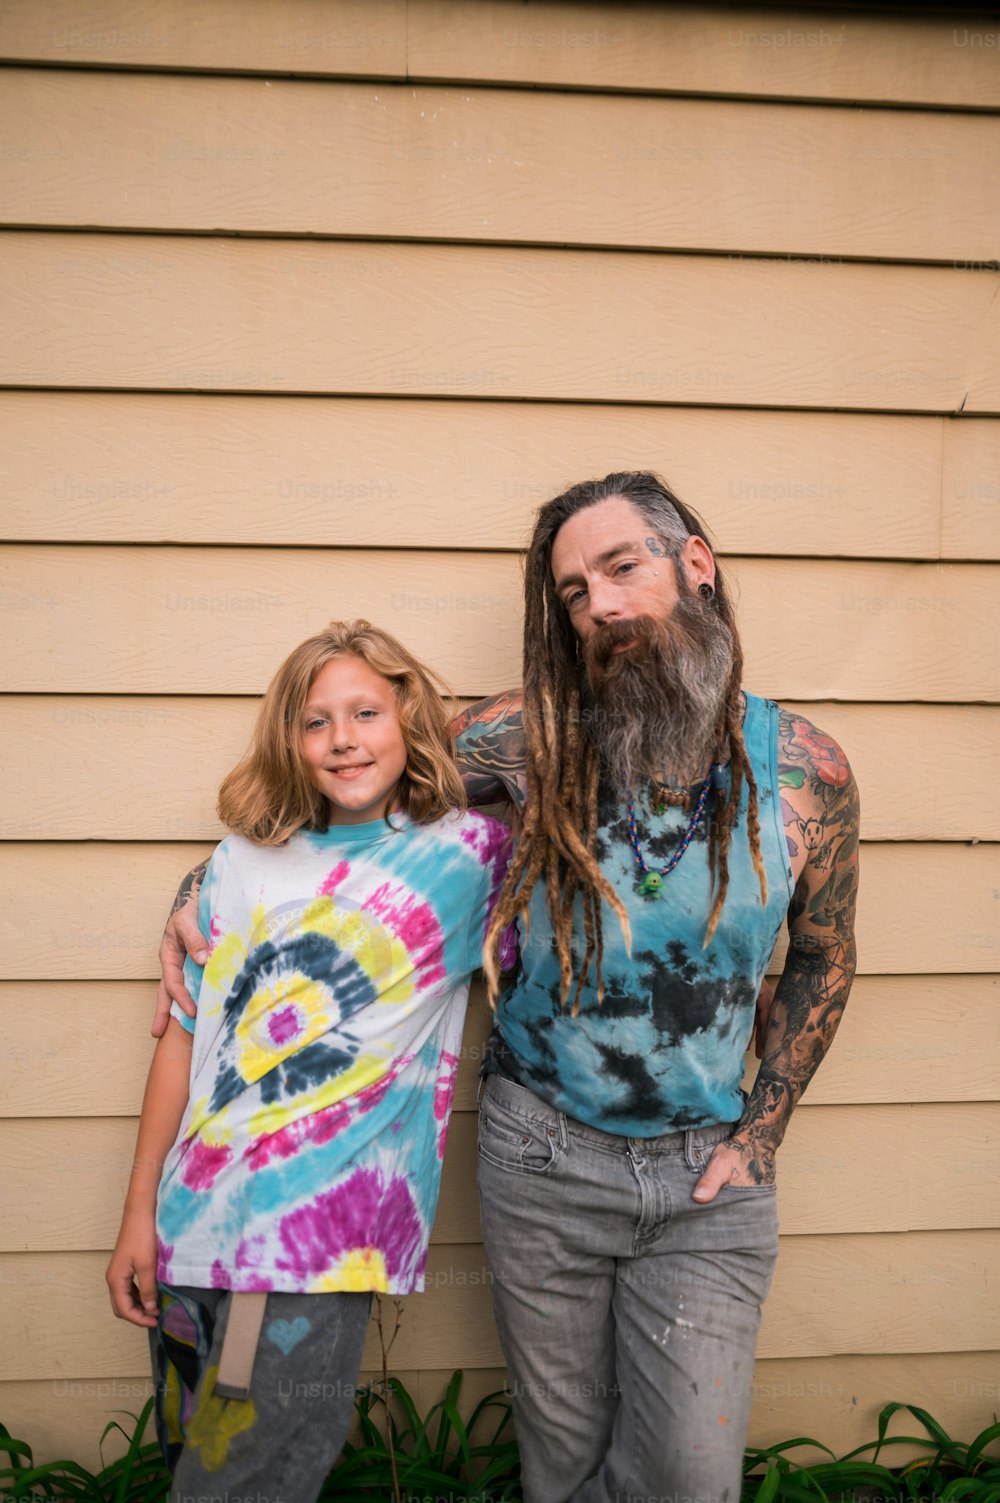 Ein Mann mit langem Bart, der neben einem kleinen Mädchen steht